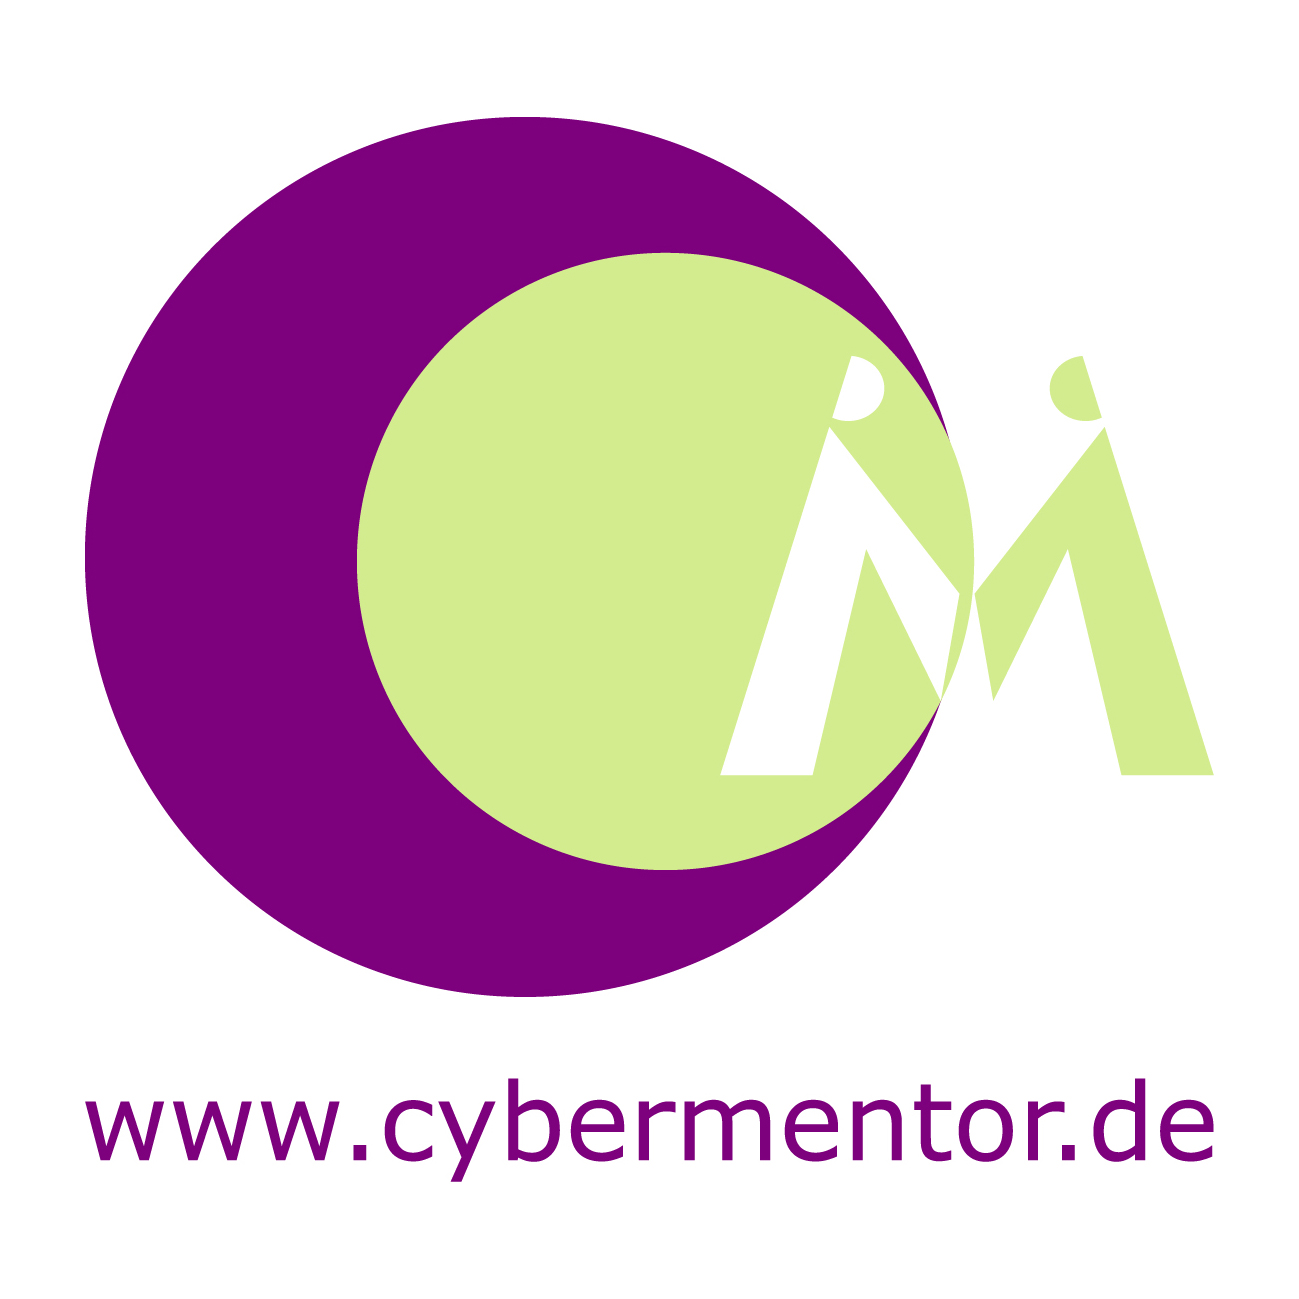 CyberMentor - Die Online-MINT-Plattform für Mädchen und Frauen-Logo